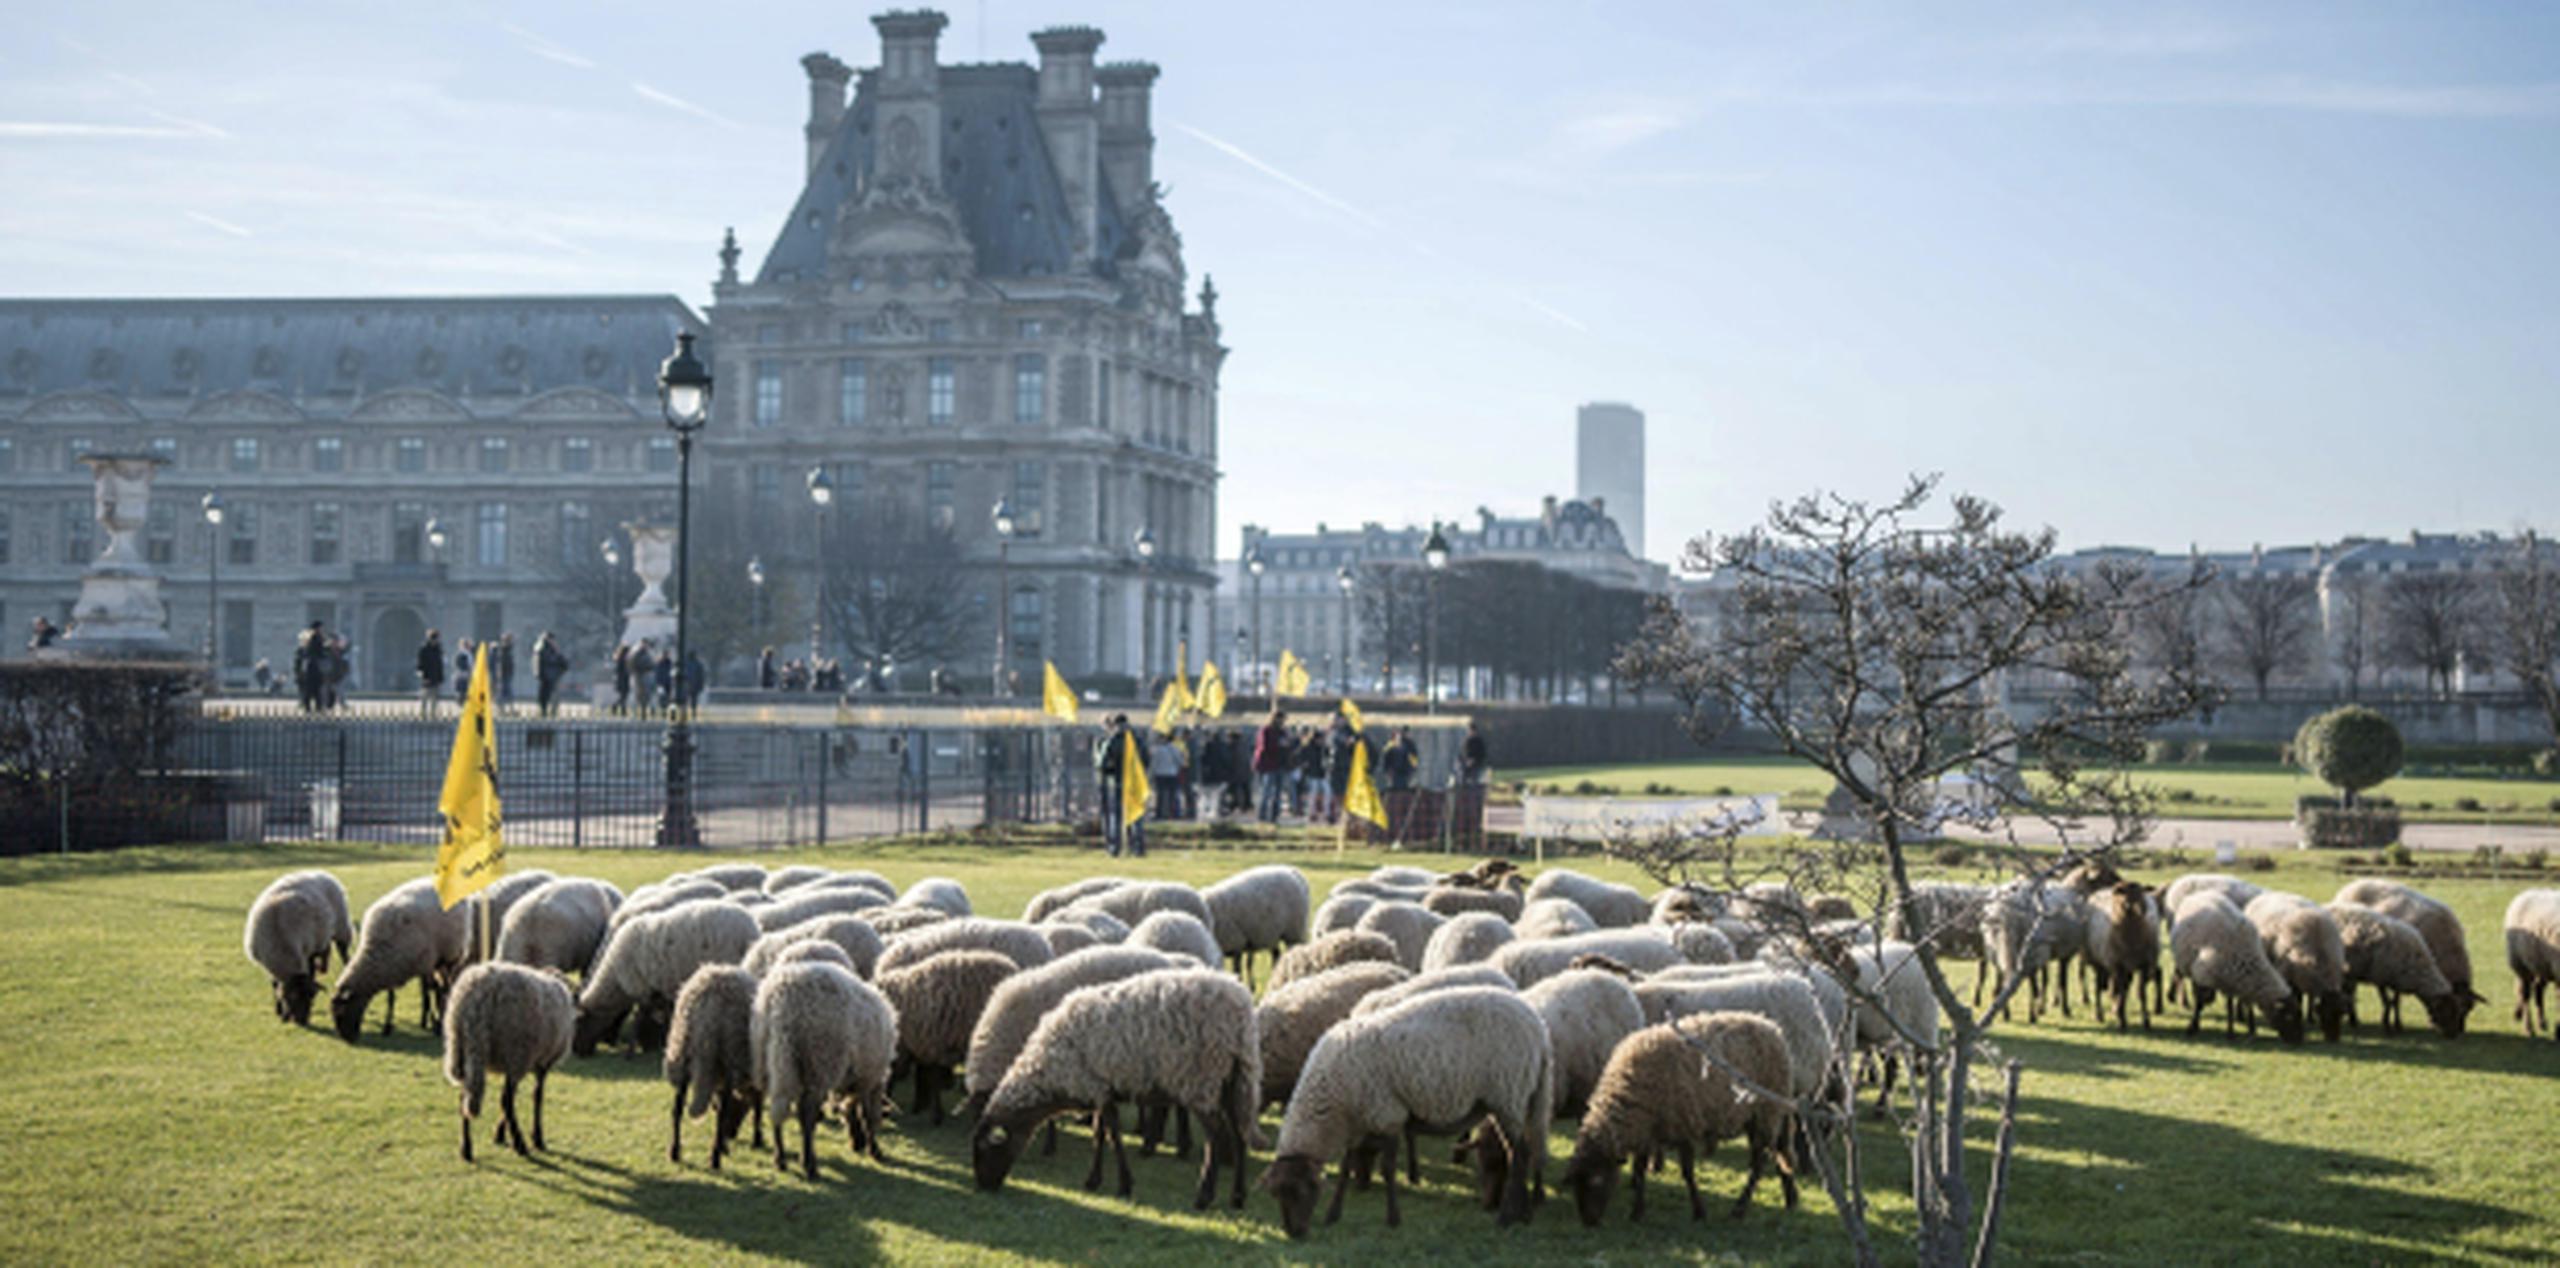 Los granjeros planean quedarse frente al Museo del Louvre por lo menos unos tres días hasta que atiendan su reclamo. (EFE/Christophe Petit Tesson)
